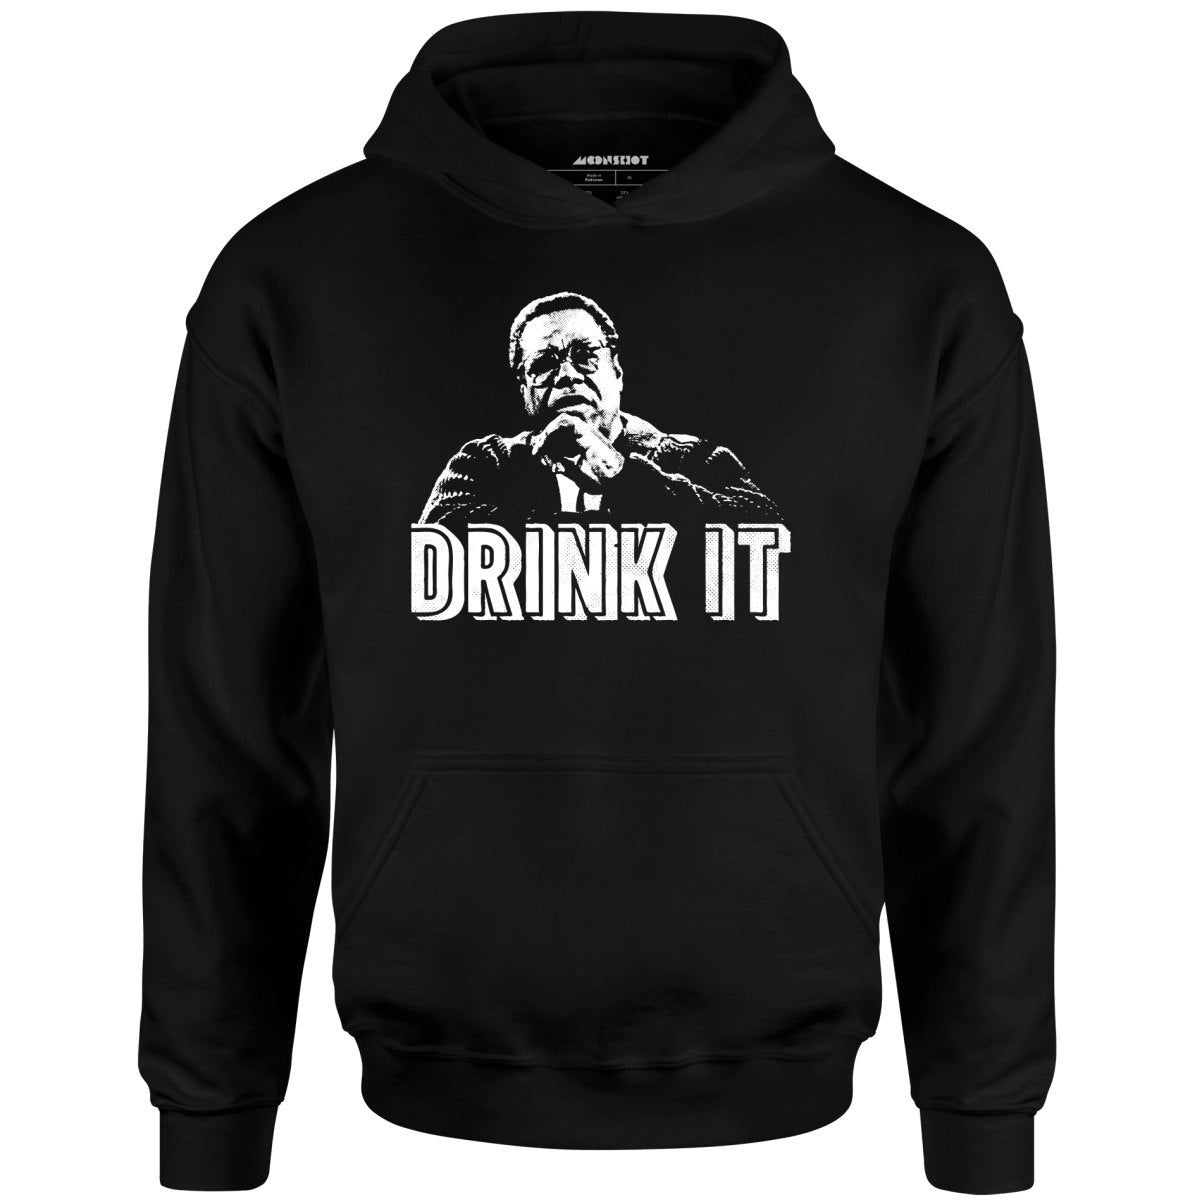 Drink It! - Unisex Hoodie